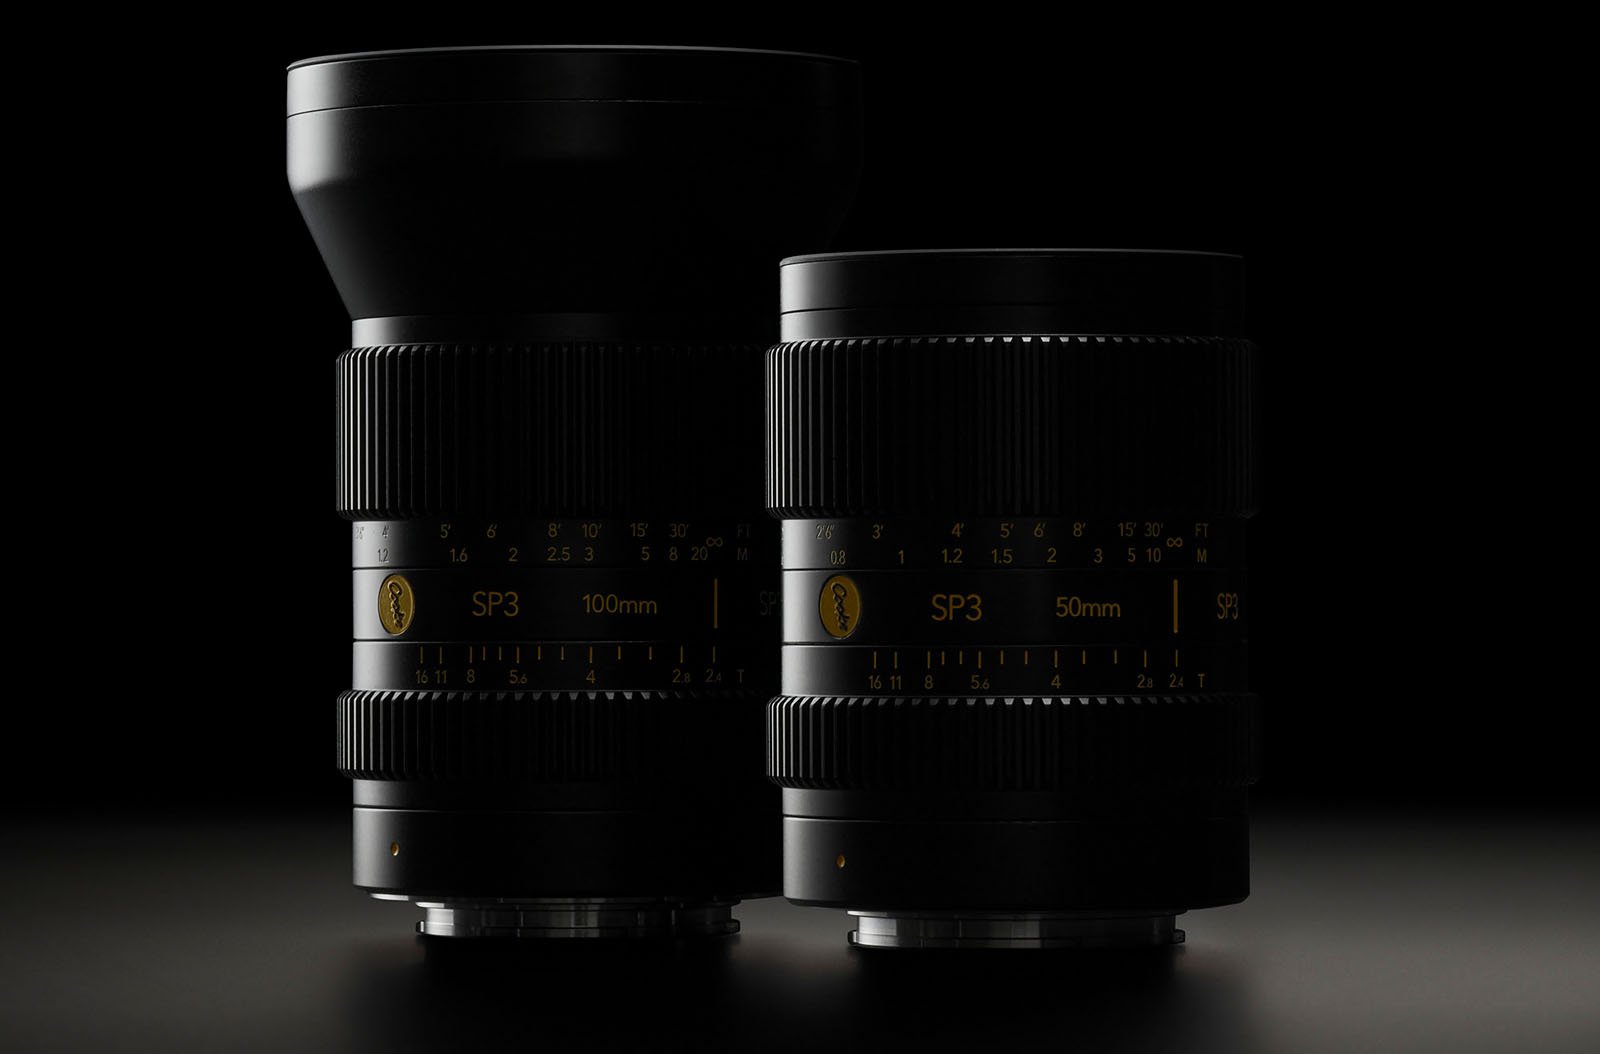 Cooke Optics SP3 cinema lenses for full-frame mirrorless cameras